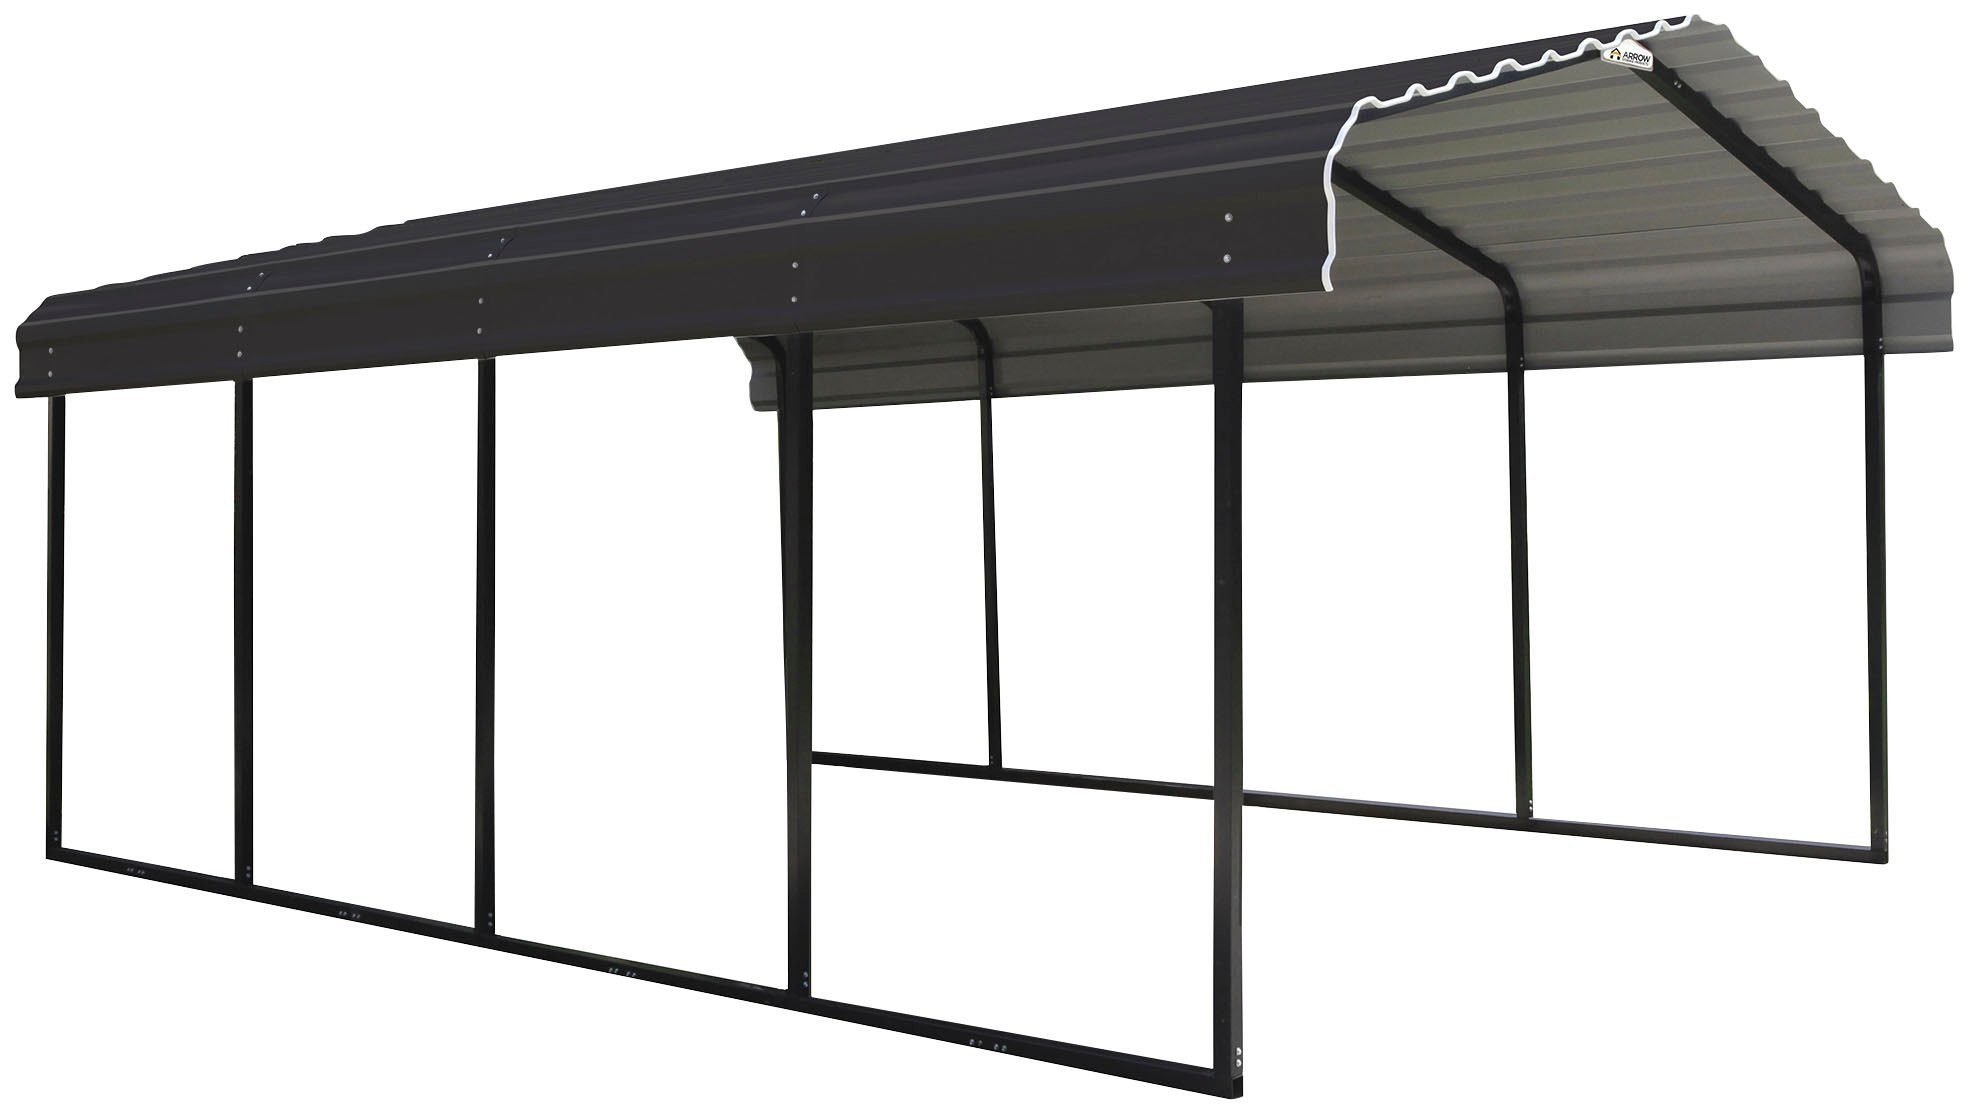 ShelterLogic Einzelcarport Rom, BxT: 370x600 cm, 210 cm Einfahrtshöhe, aus verzinktem Stahl